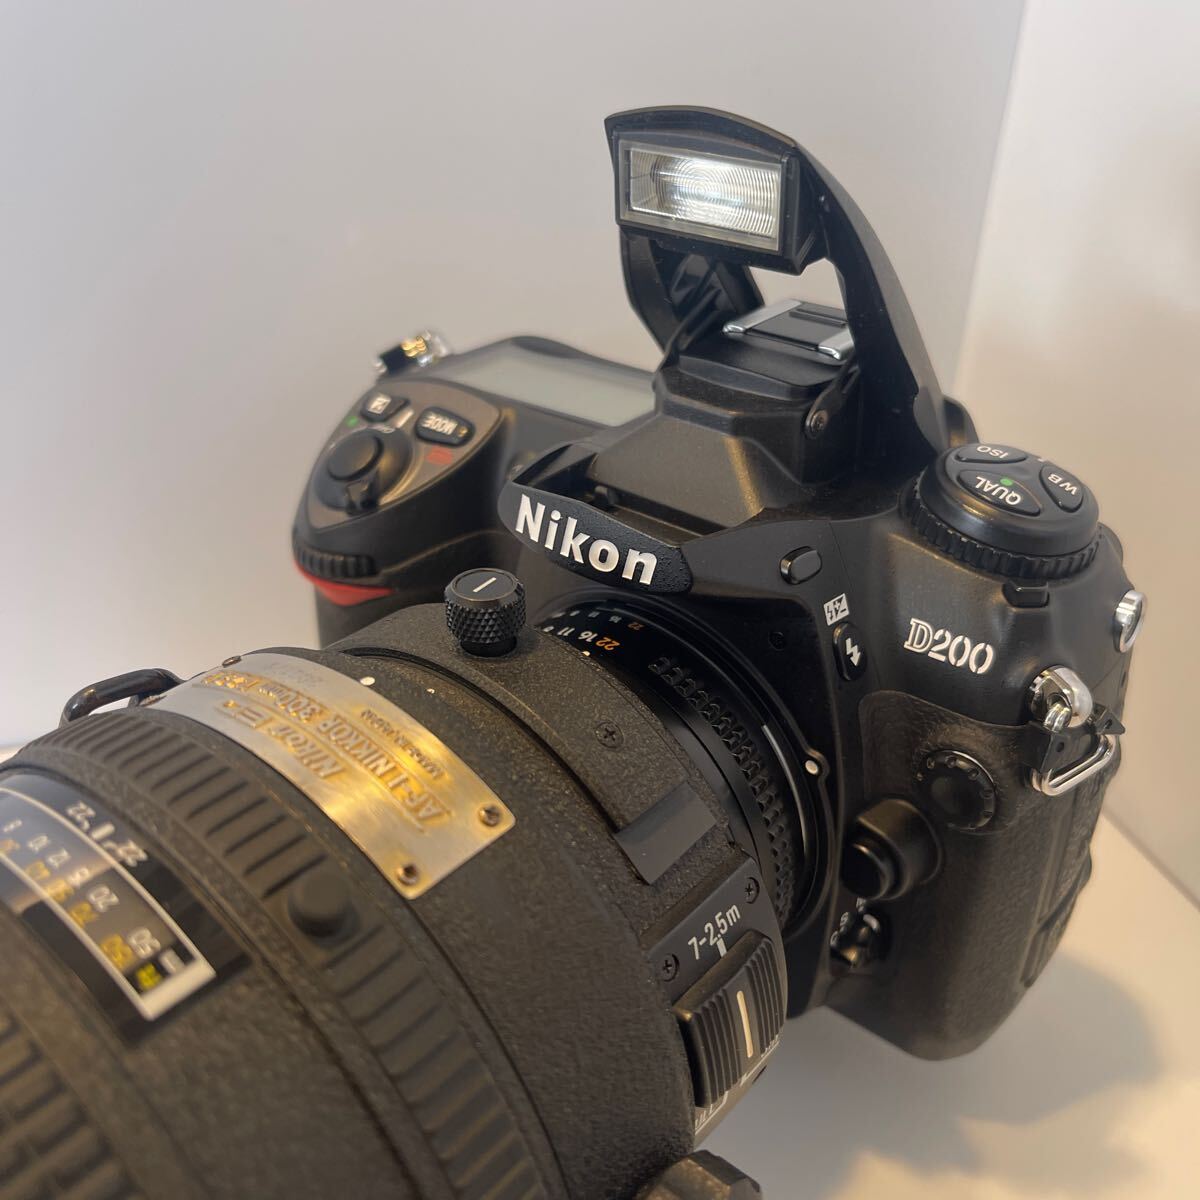 Nikon ニコン D200 大口径300mmf2.8望遠レンズ【難あり】DXカメラとの組み合わせで450mm換算大口径超望遠レンズセットの画像2